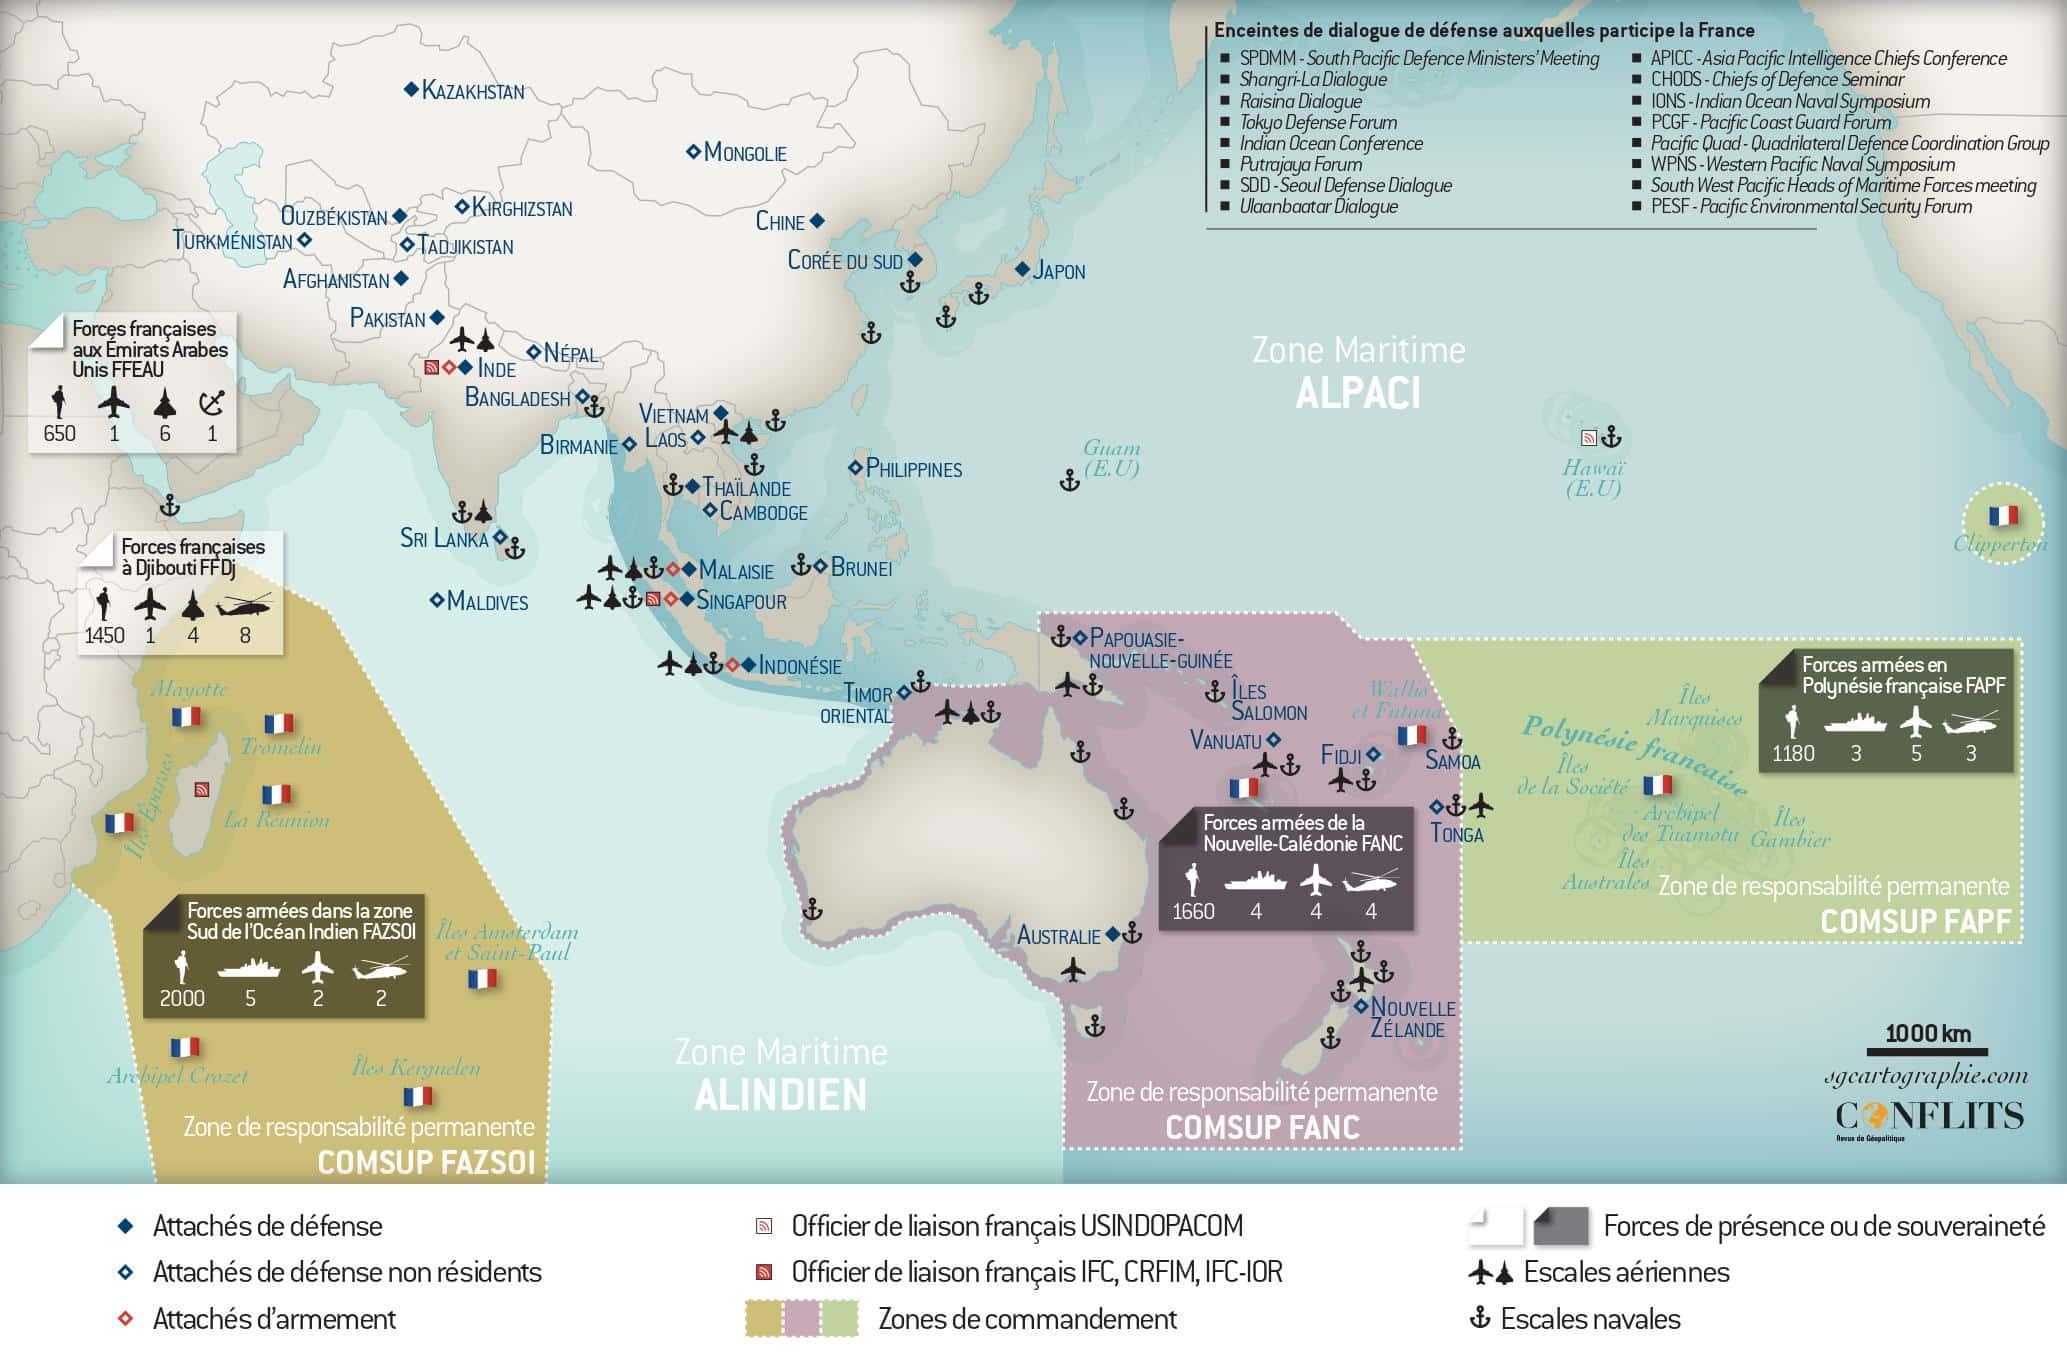 Carte Militaire de l'Indopacifique
Carte Conflits